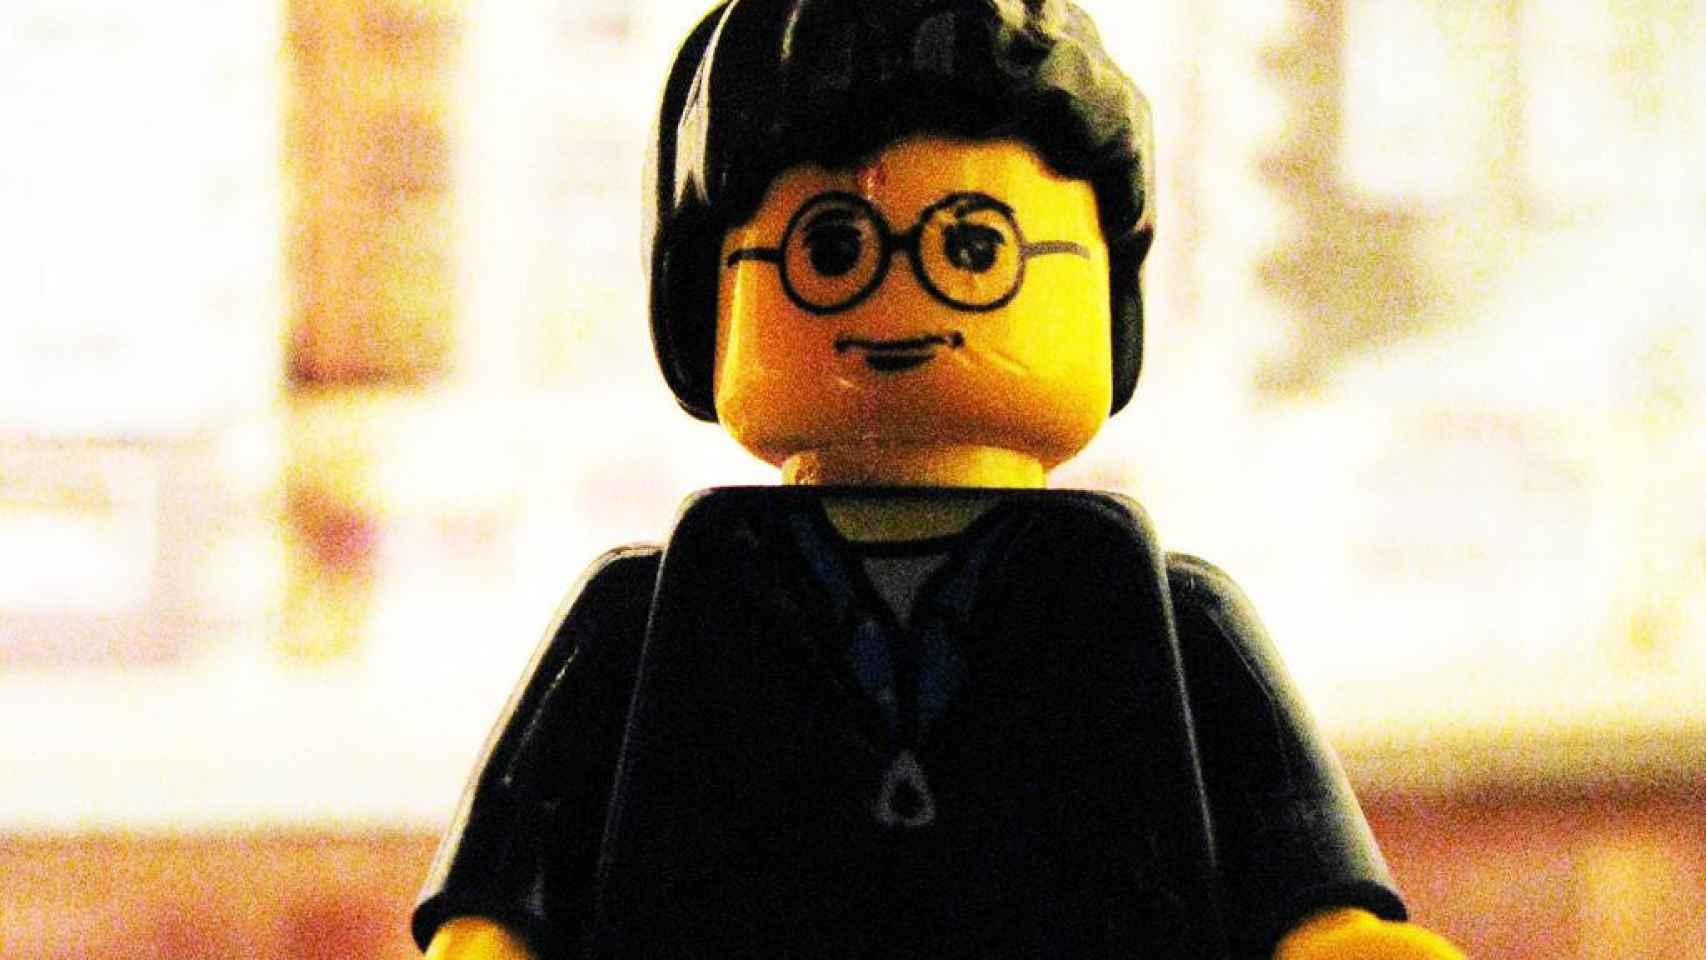 Harry Potter LEGO / PIXABAY